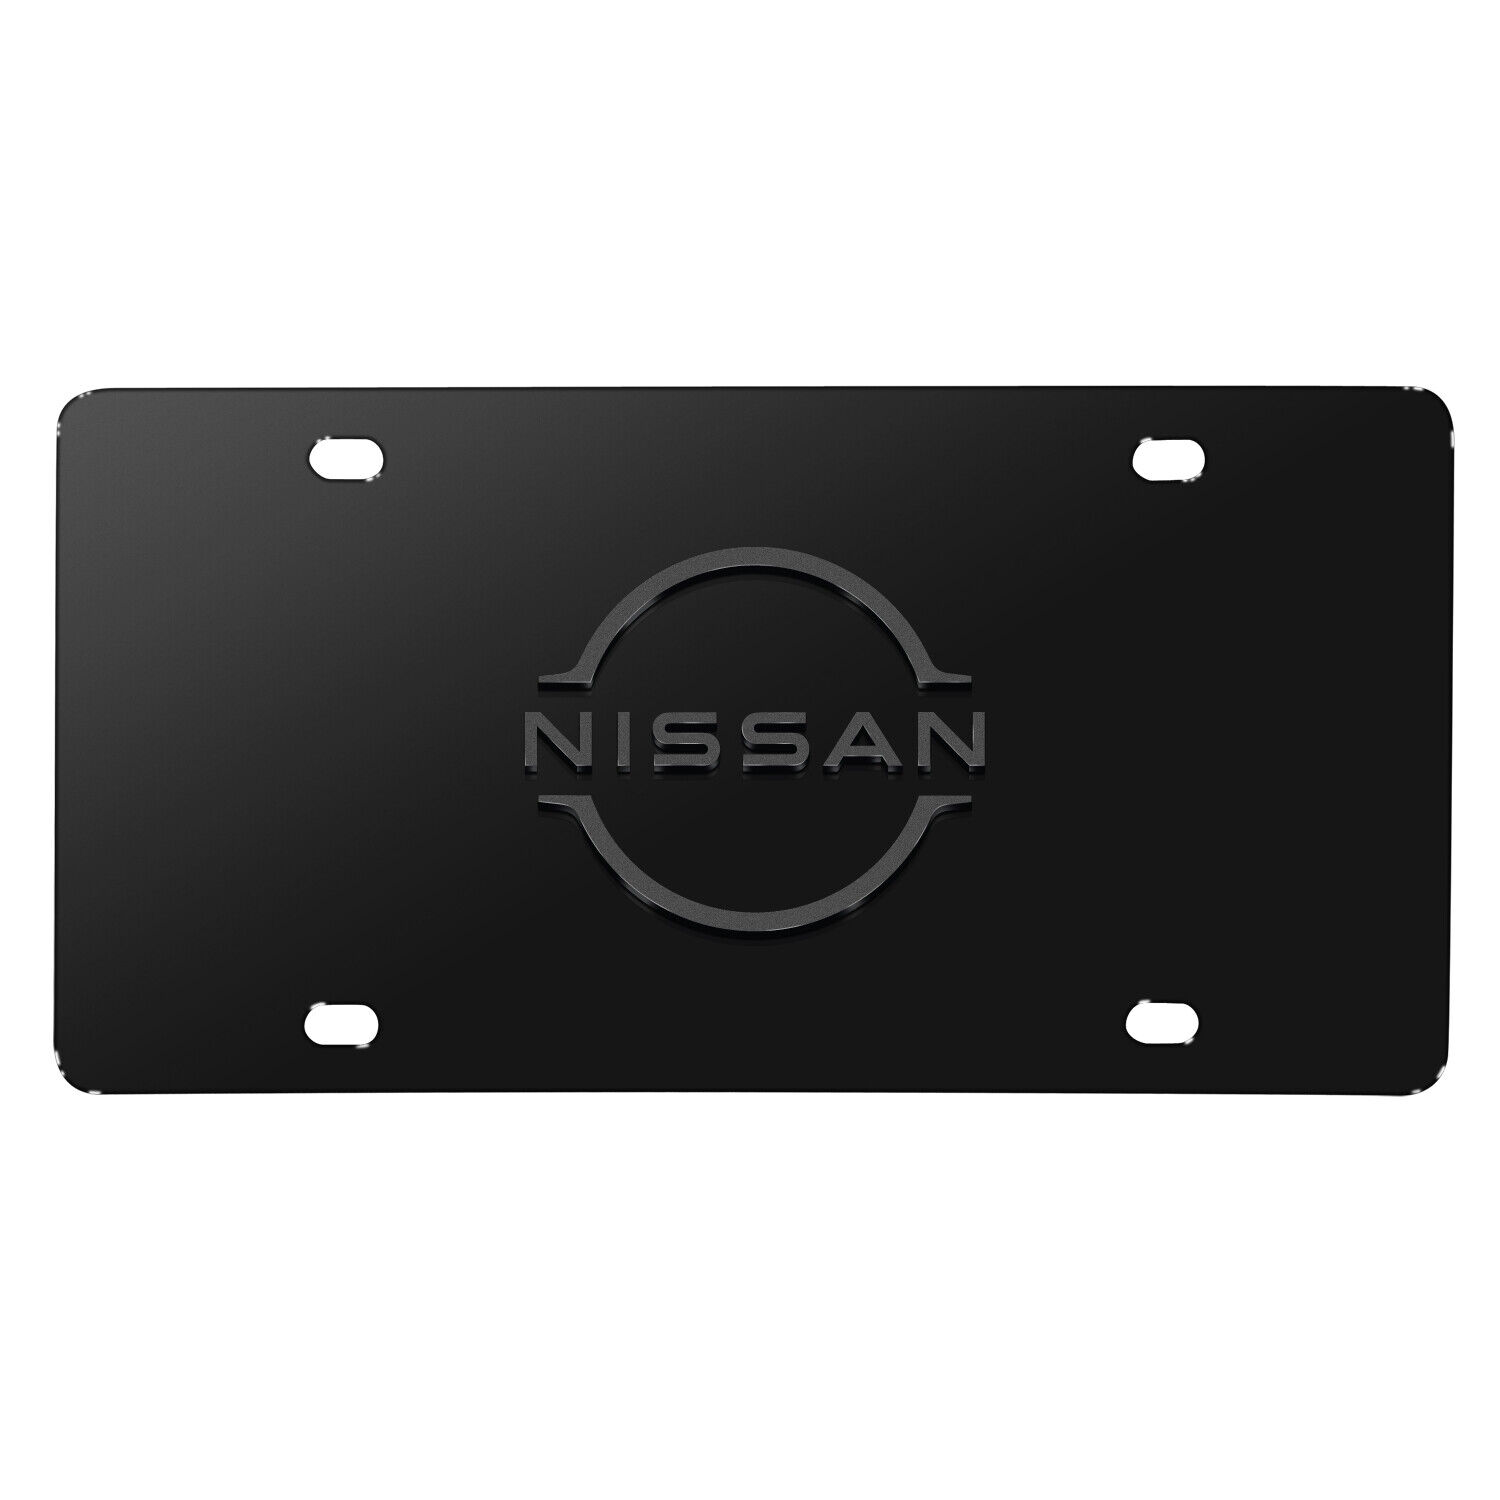 Nissan New Logo 3D Dark Gray Logo on Black Stainless Steel License Plate